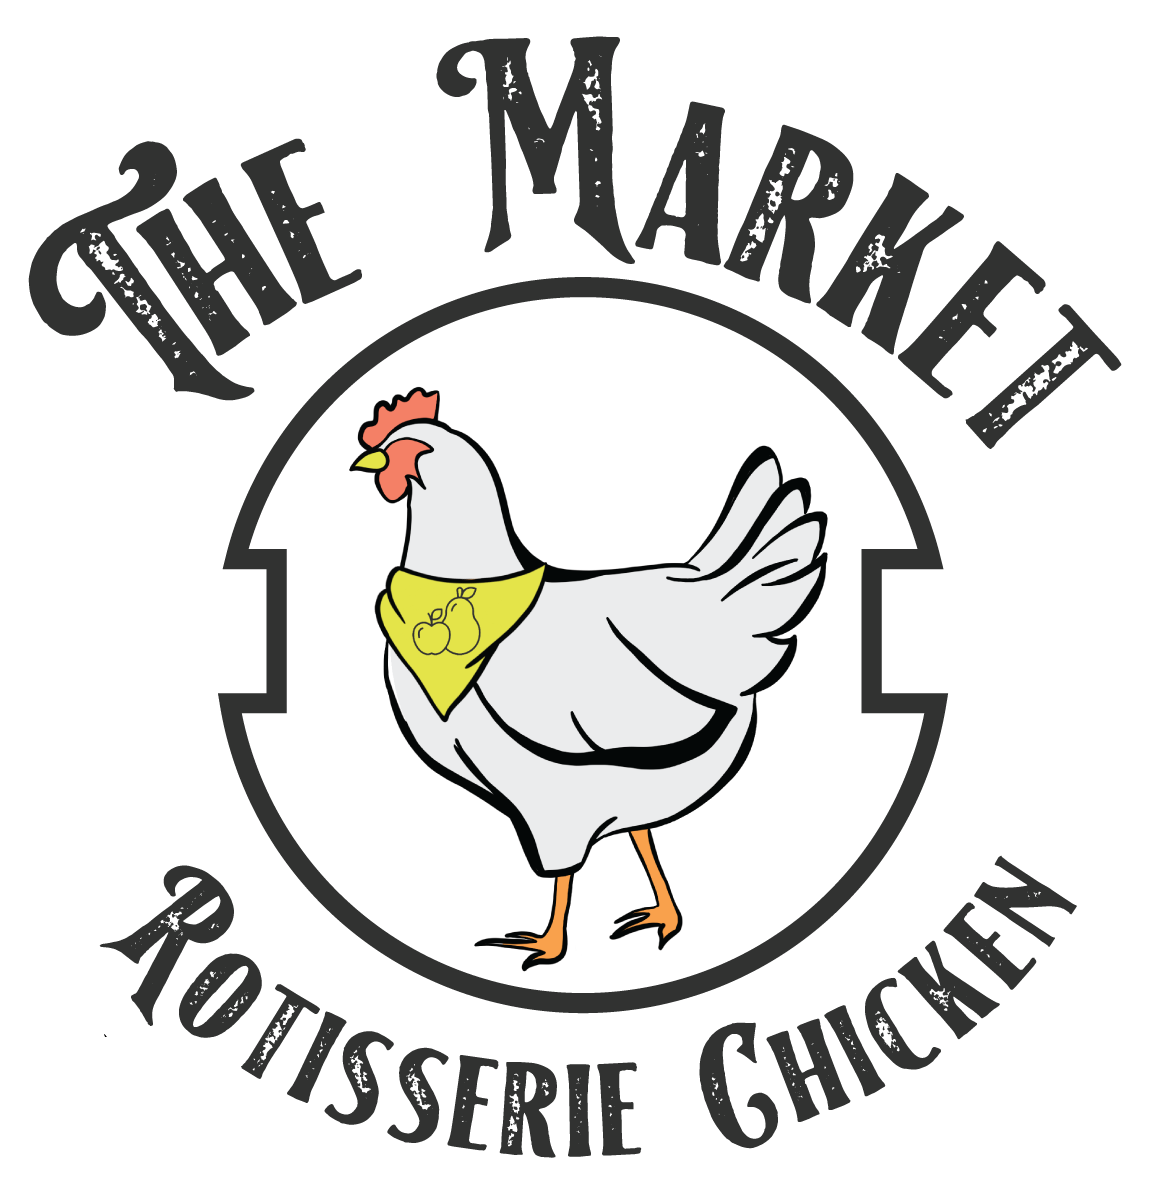 the market rotiesserie chicken logo